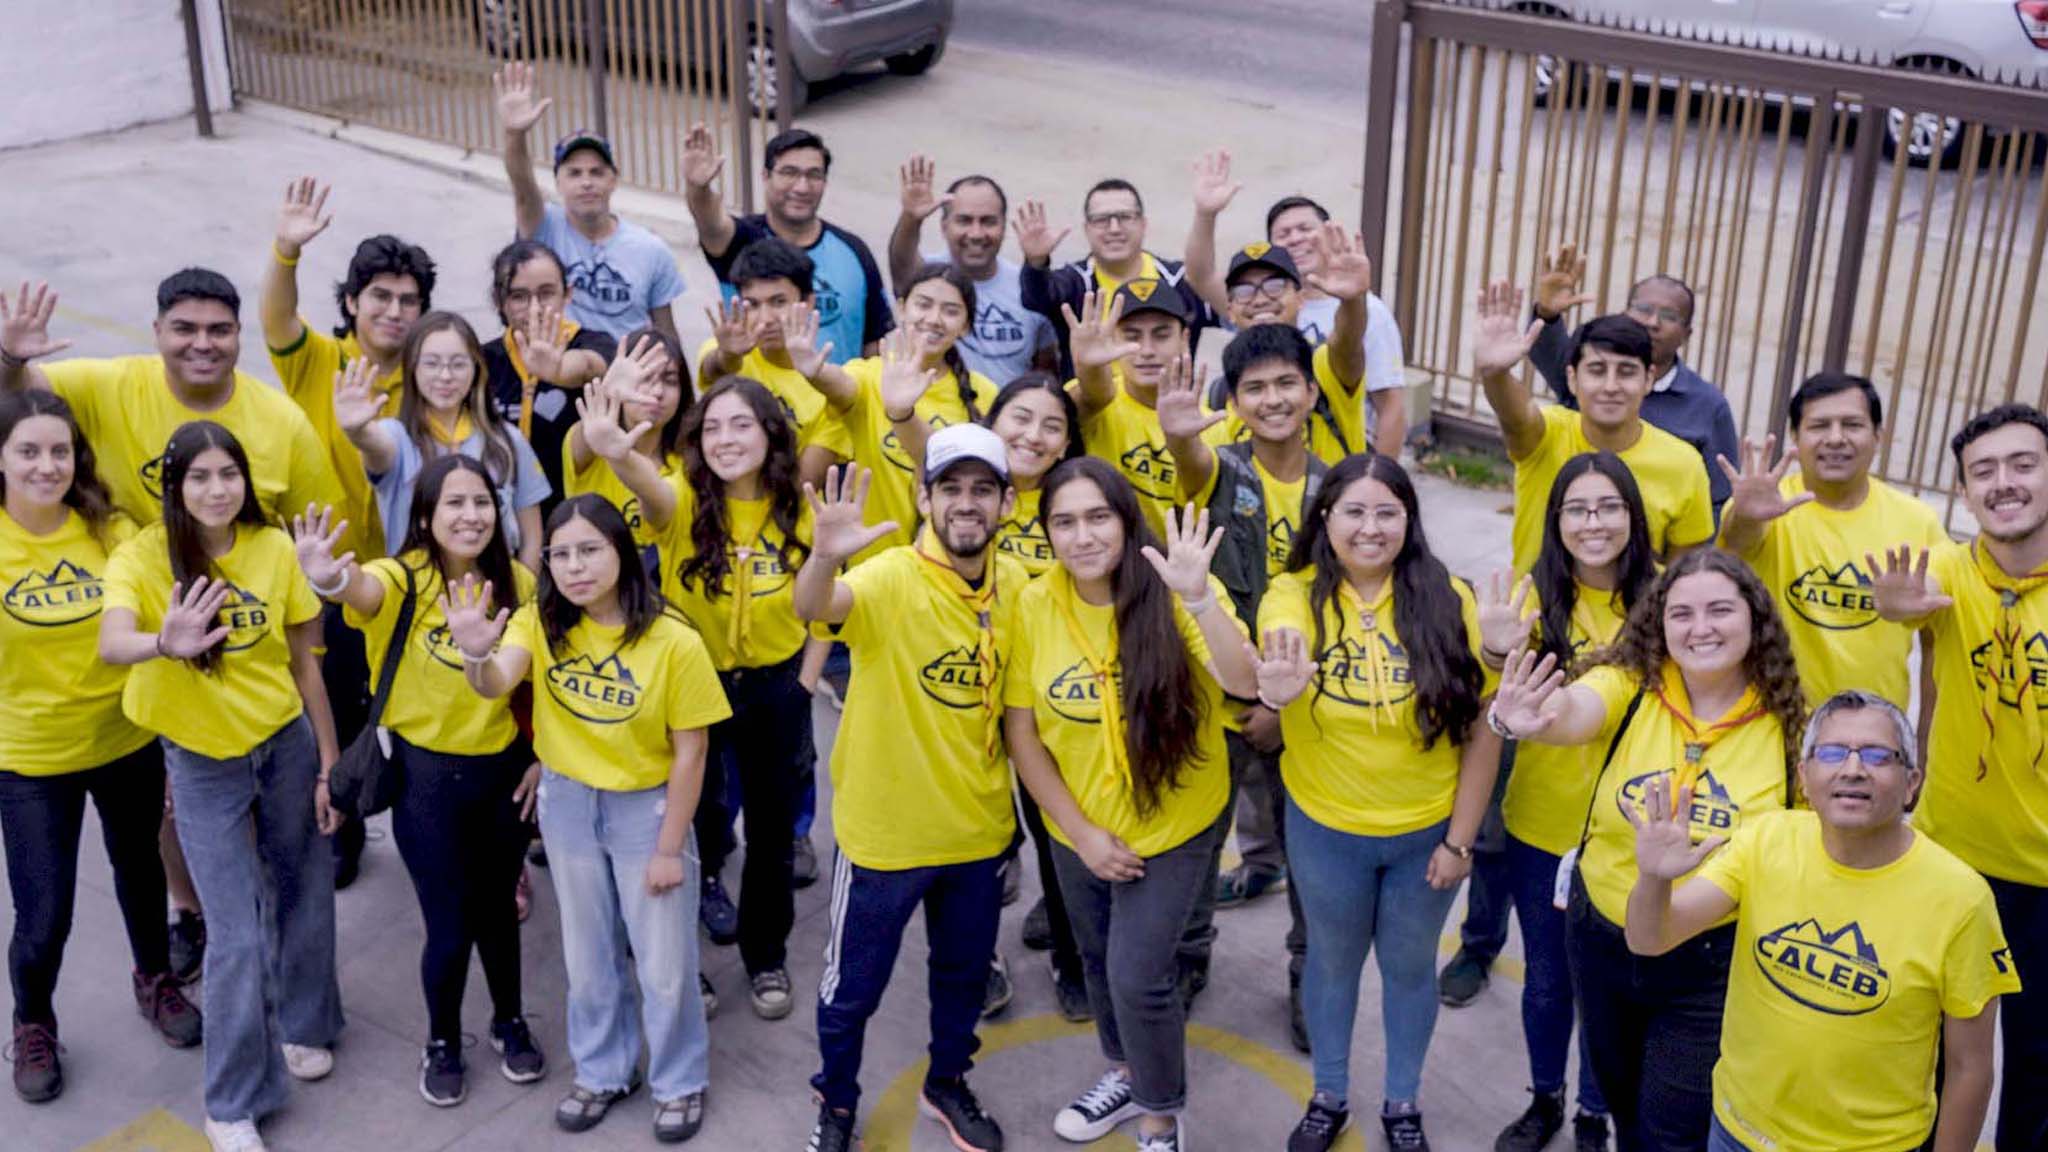 Chile: Jóvenes brindan ayuda a damnificados por los incendios a través de “Misión Caleb”